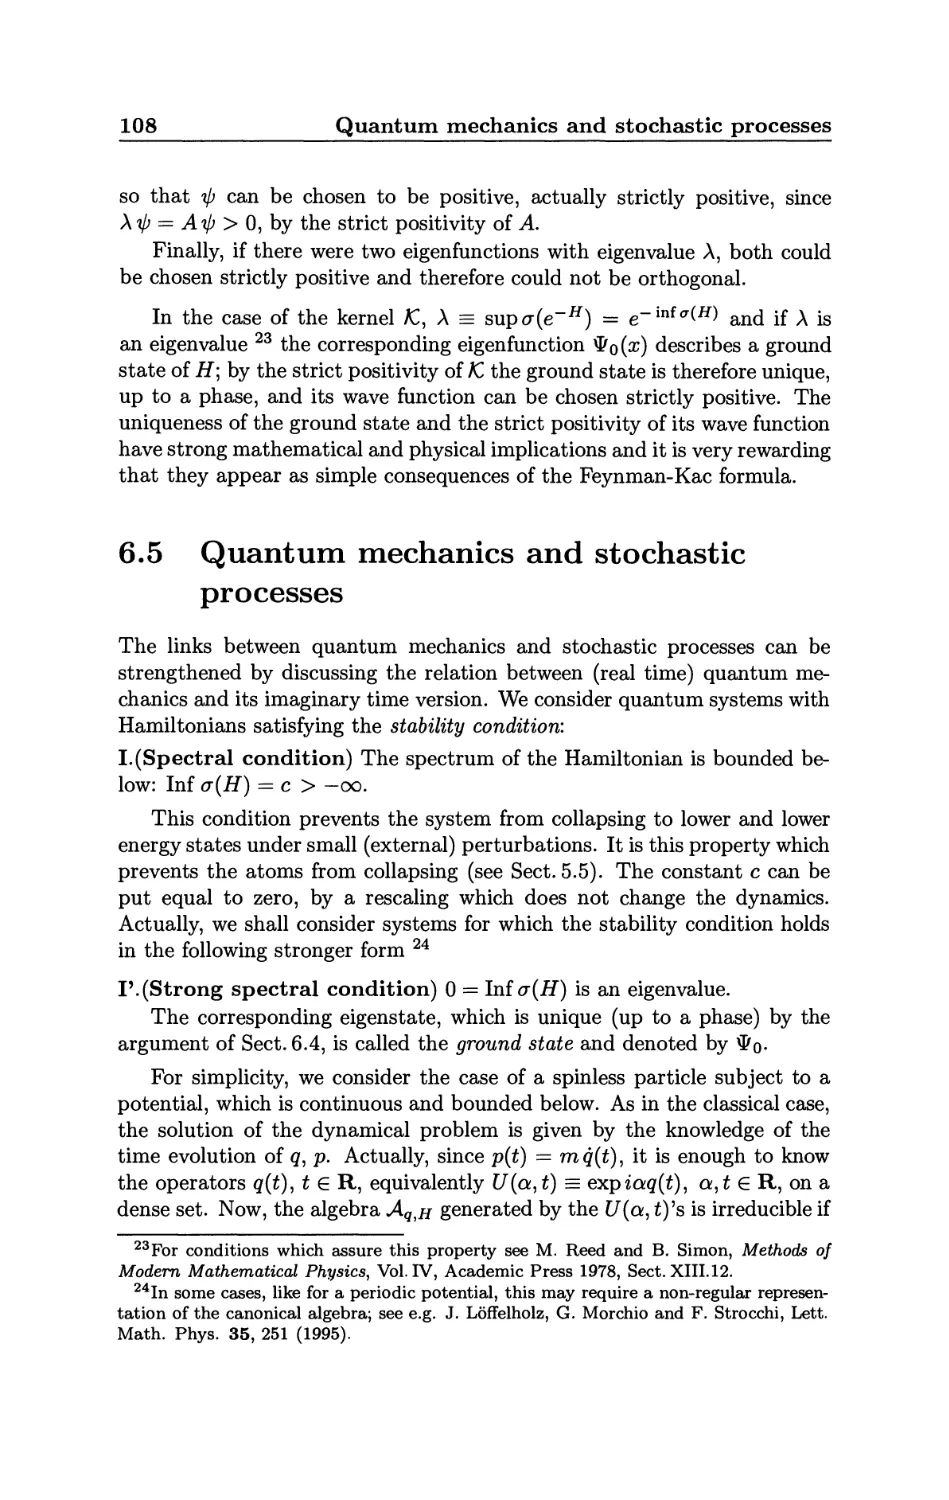 6.5 Quantum mechanics and stochastic processes